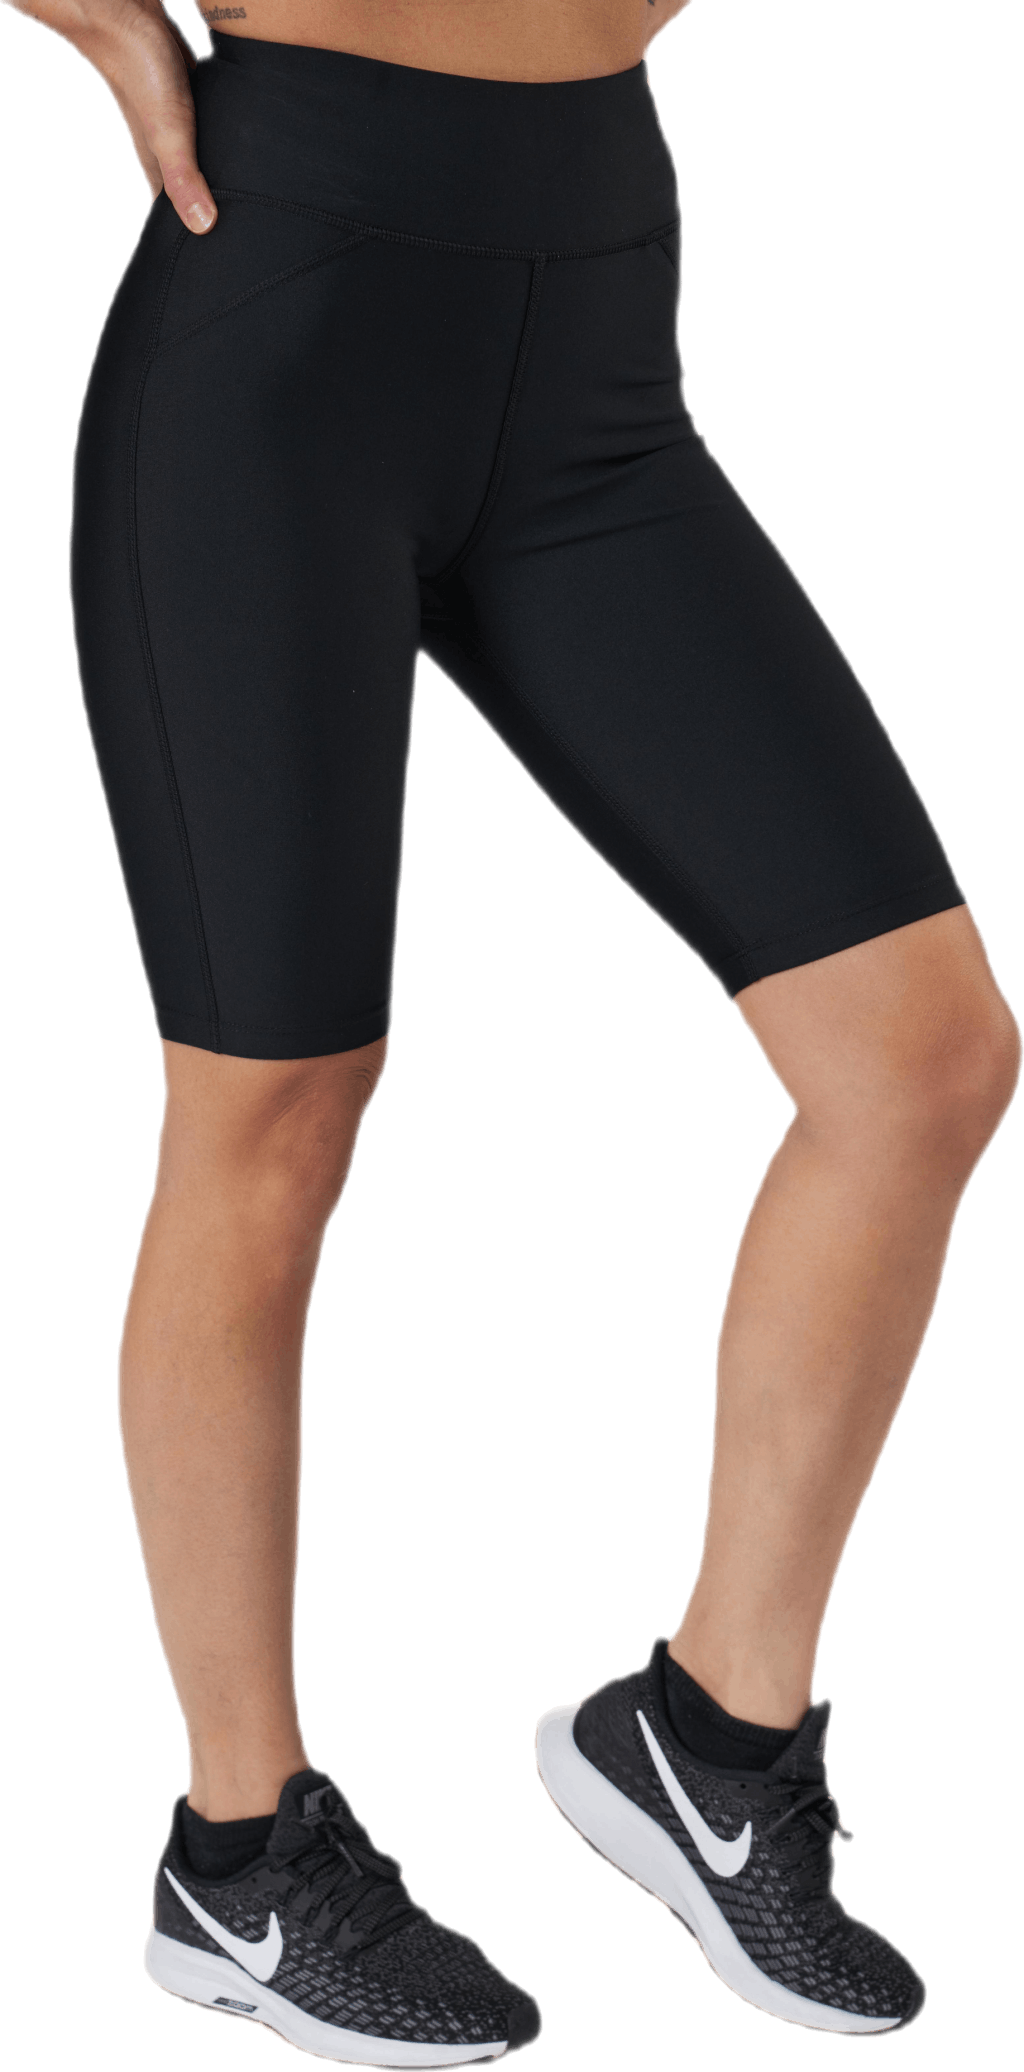 Control Biker Shorts2.0 Black